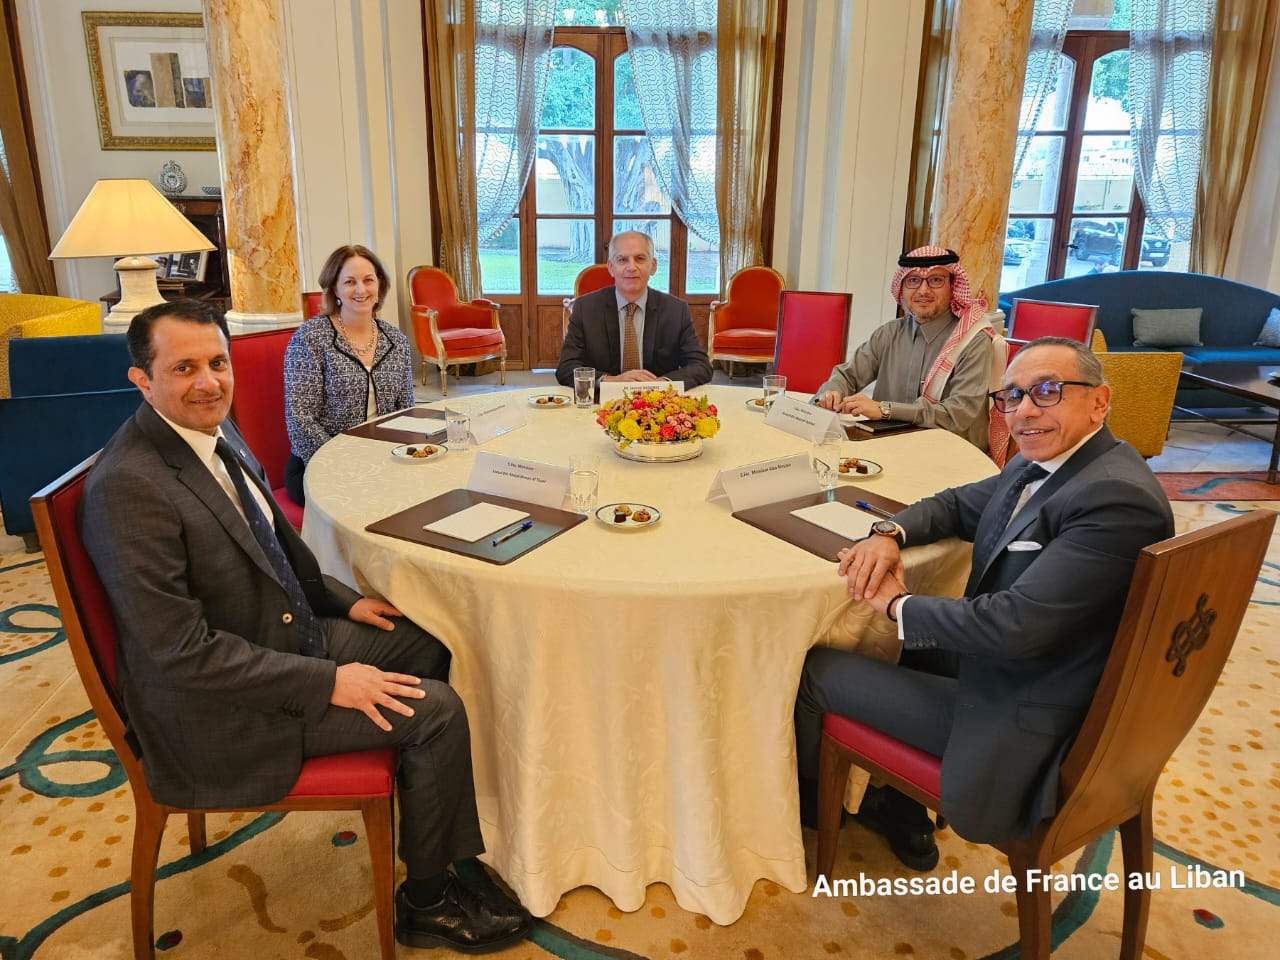 السفارة الفرنسية : سفراء اللجنة الخماسية اجتمعوا اليوم لإعادة التأكيد على عزمهم على تسهيل ودعم إنتخاب رئيس للجمهورية